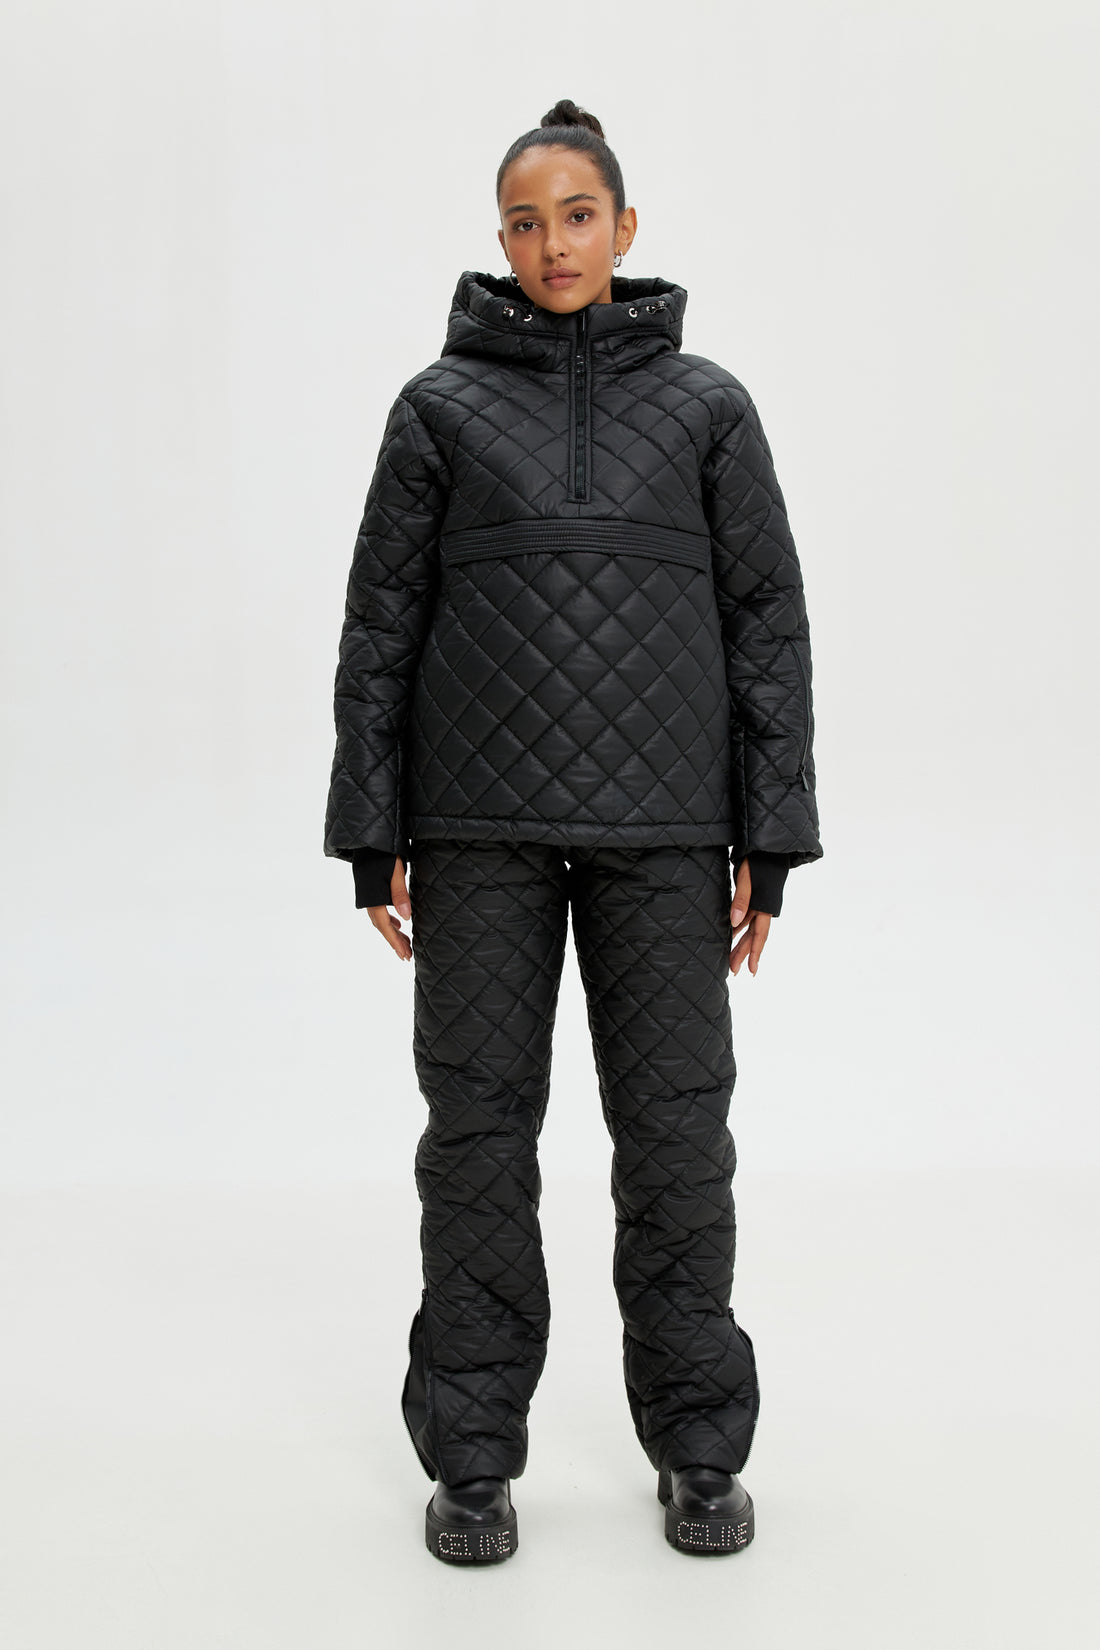 Black two piece snowsuit - ATLAS - Black ski suit - Women winter outwear